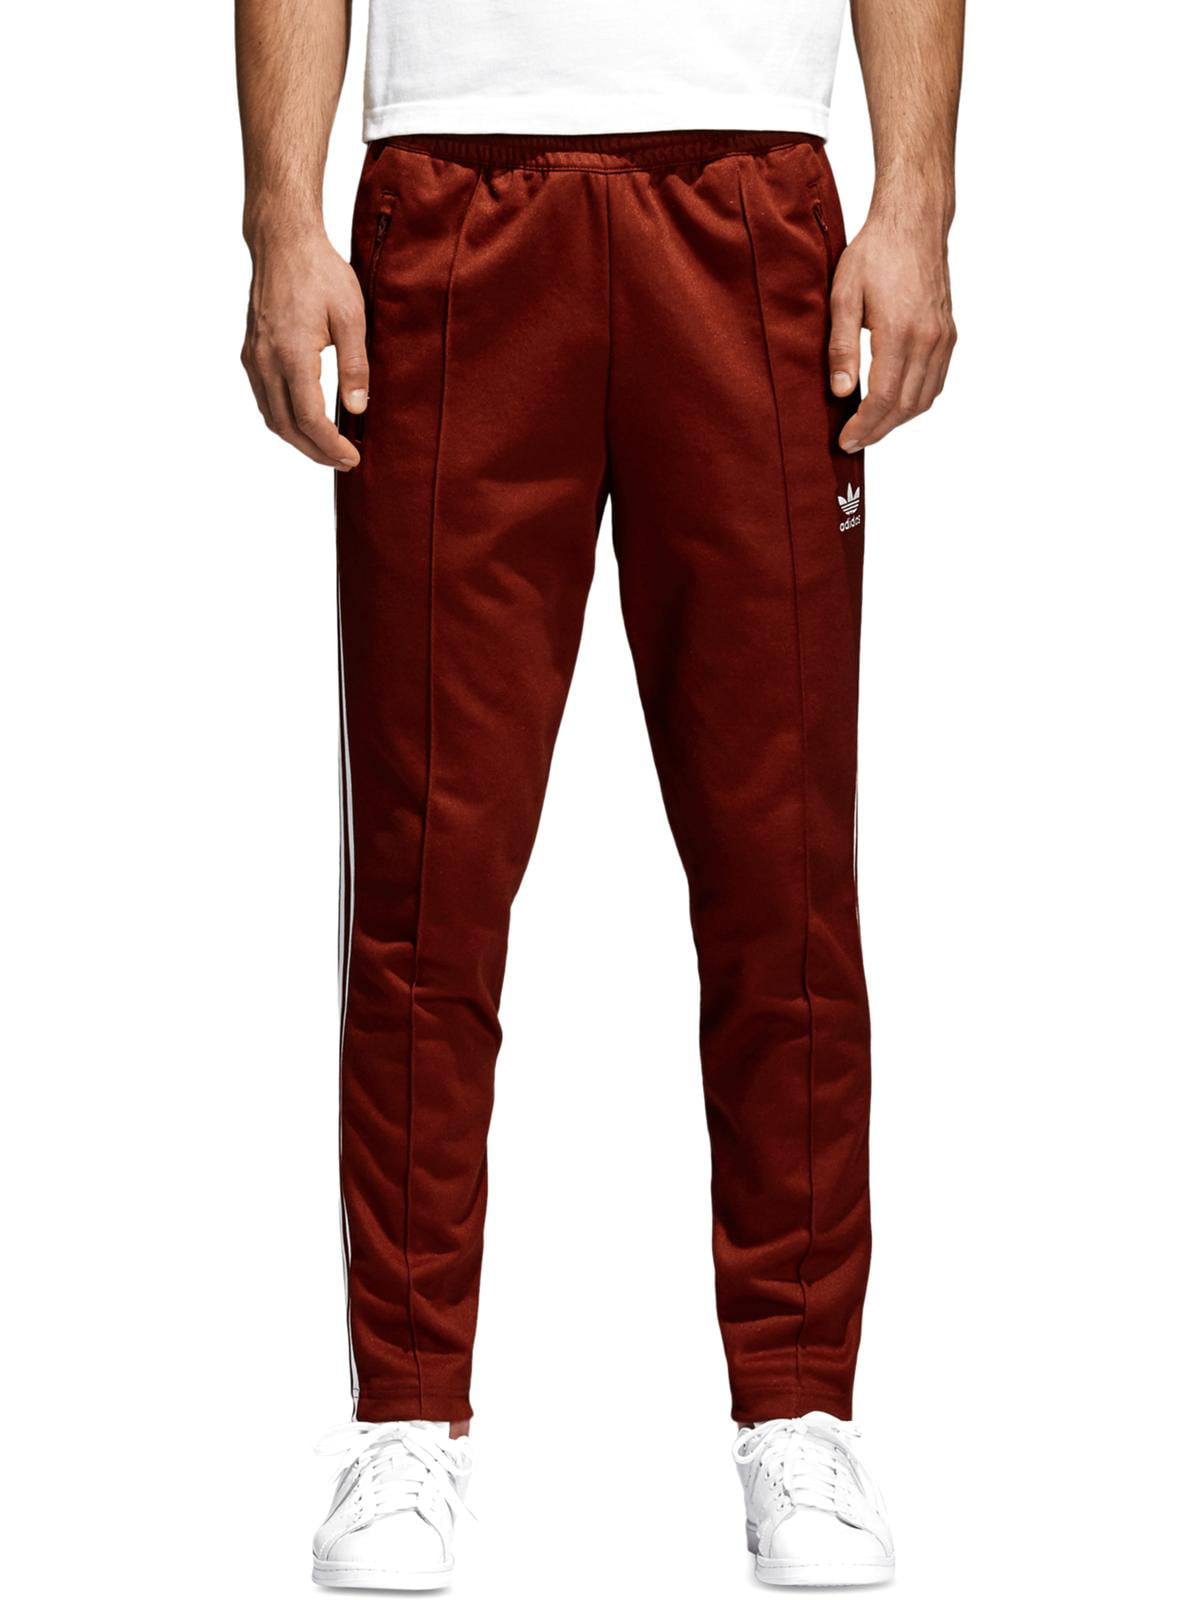 obispo Deliberadamente Ejecutable adidas Originals Mens Beckenbauer Slim Fit Sweats Track Pants Red XL -  Walmart.com